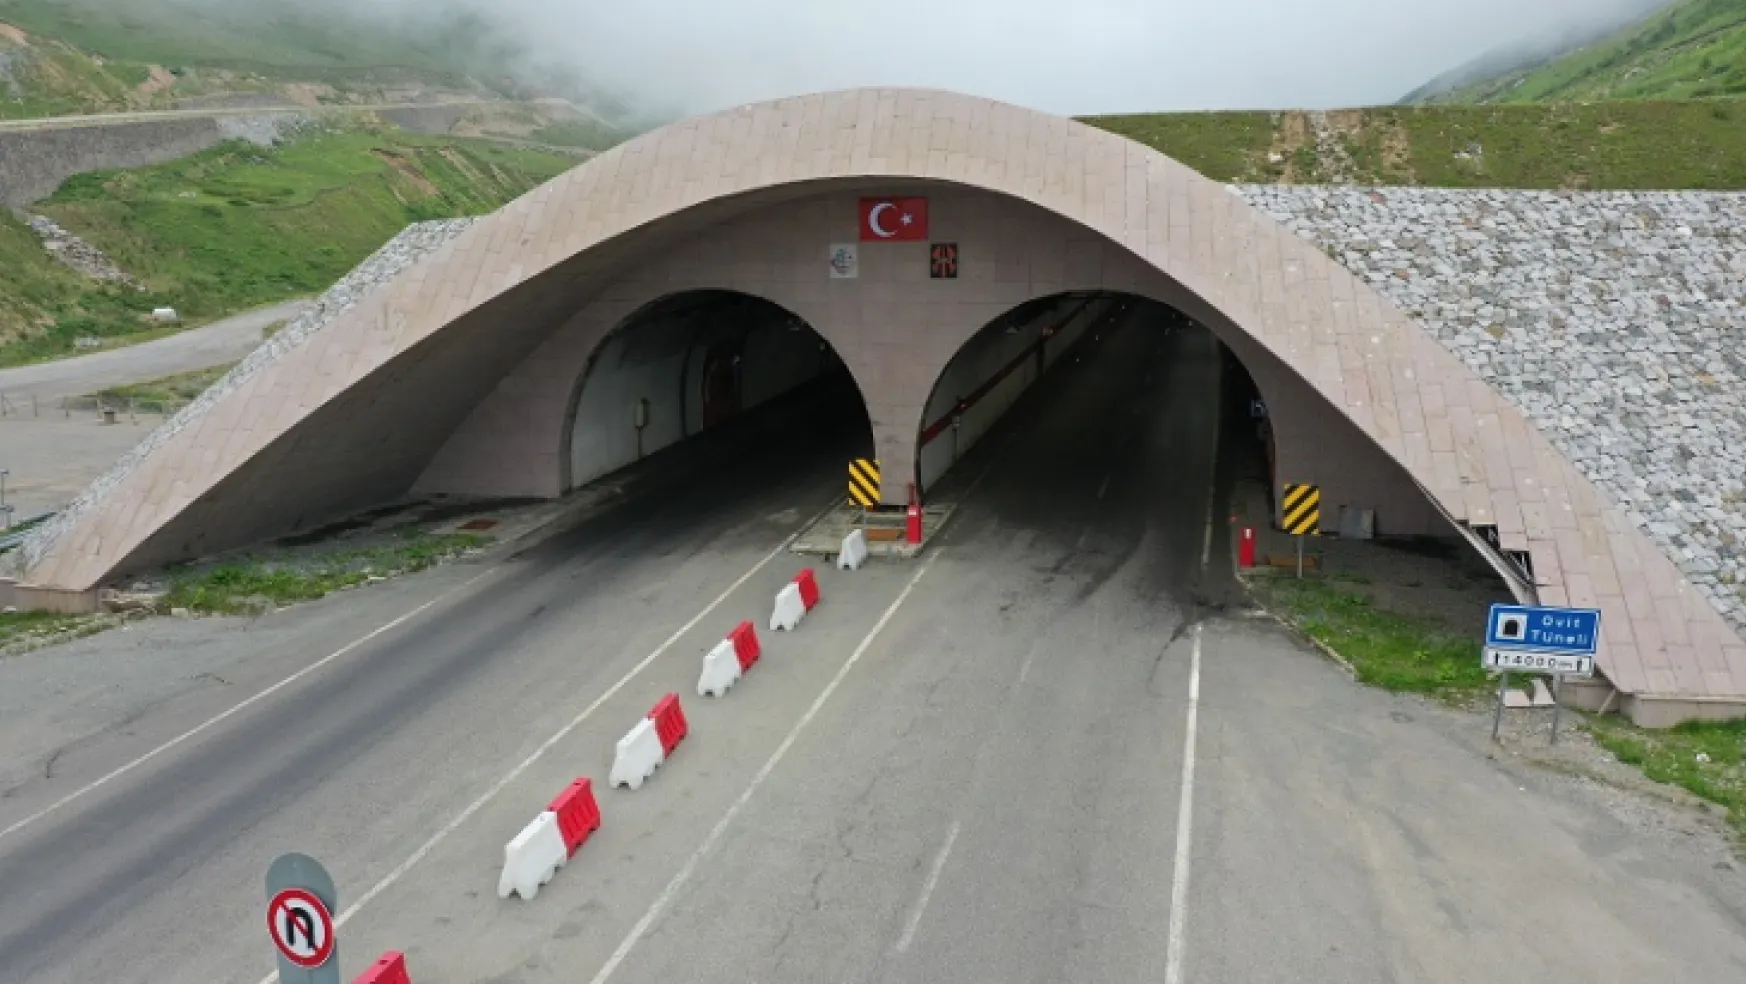 Ulaştırma ve Altyapı Bakanlığı, Ovit Tüneli ile ilgili yazılı açıklama yaptı.